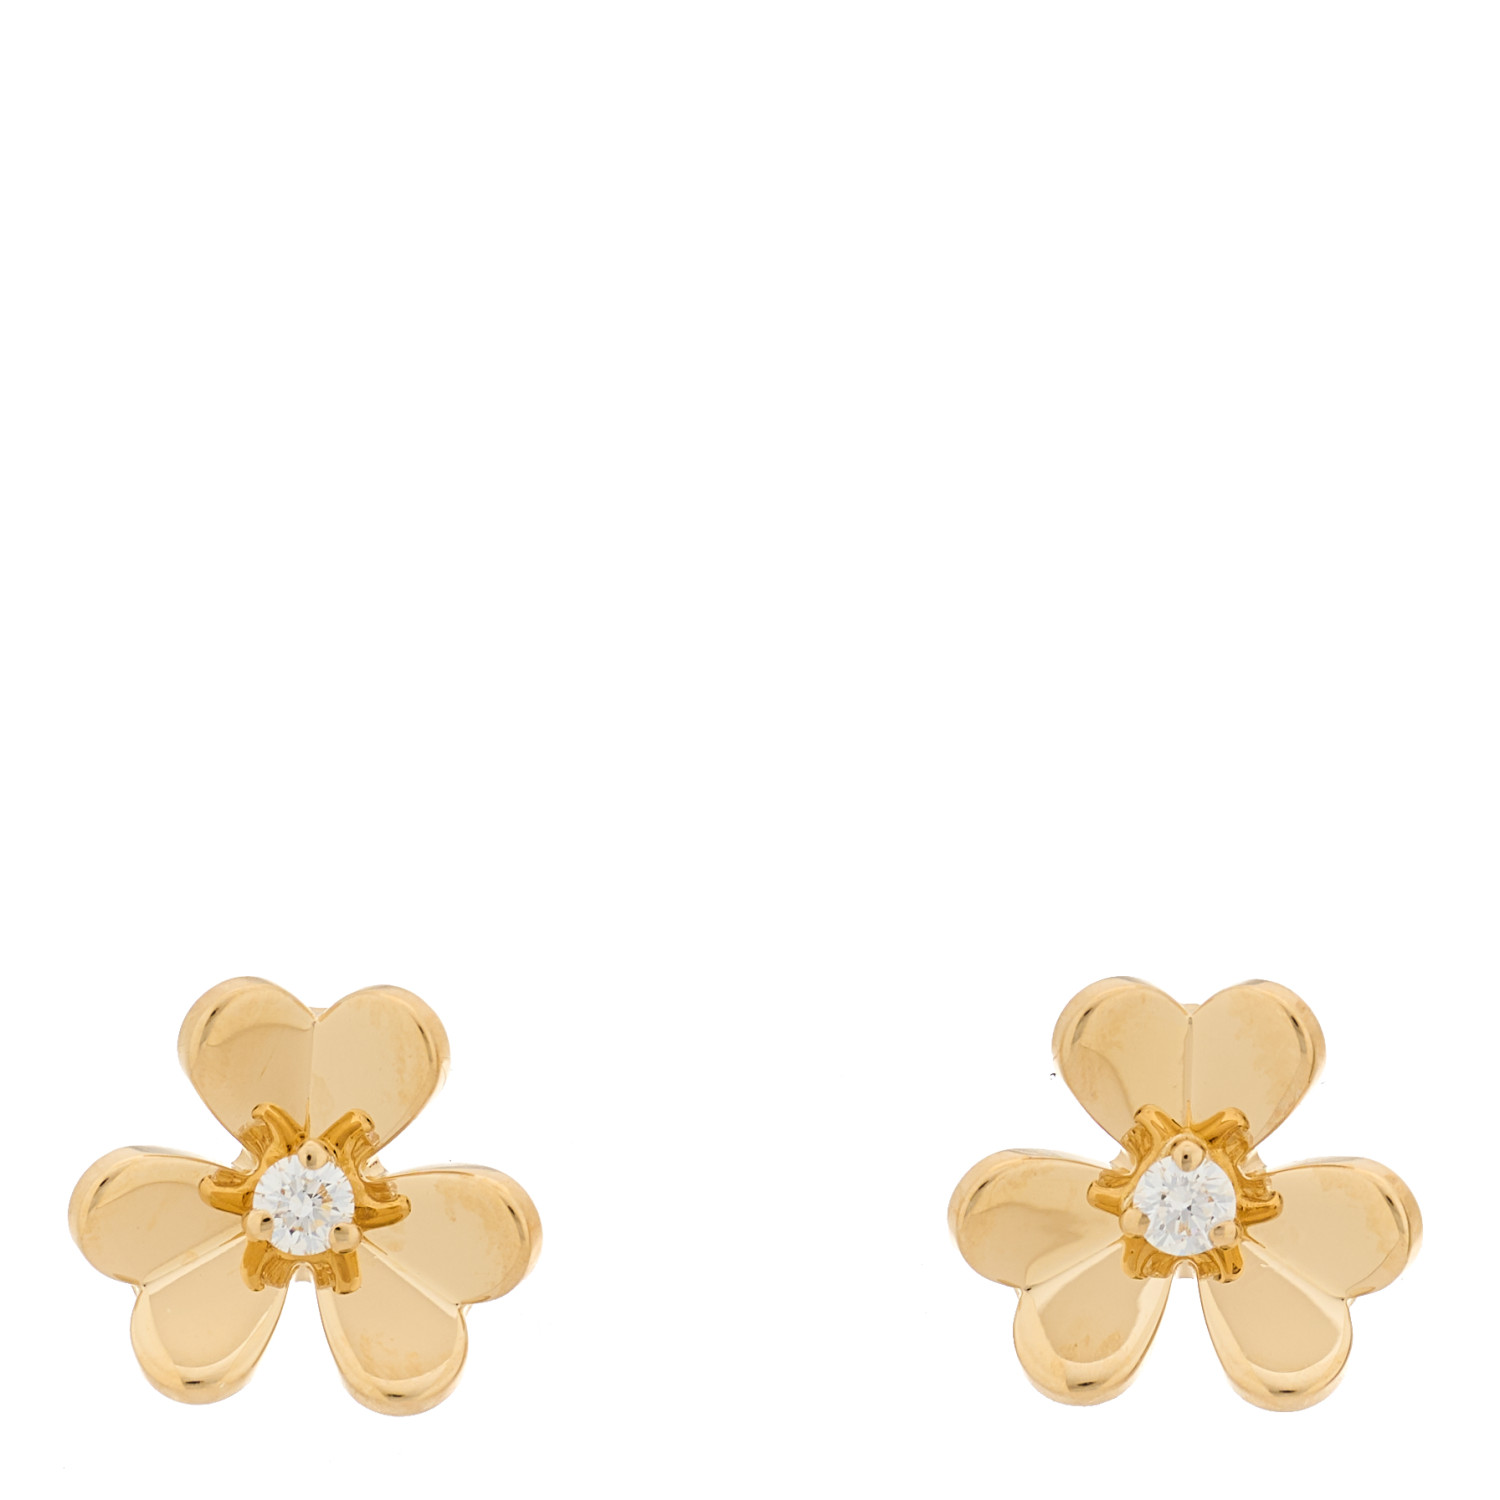 VAN CLEEF & ARPELS 18K Yellow Gold Diamond Mini Frivole Earrings by FASHIONPHILE